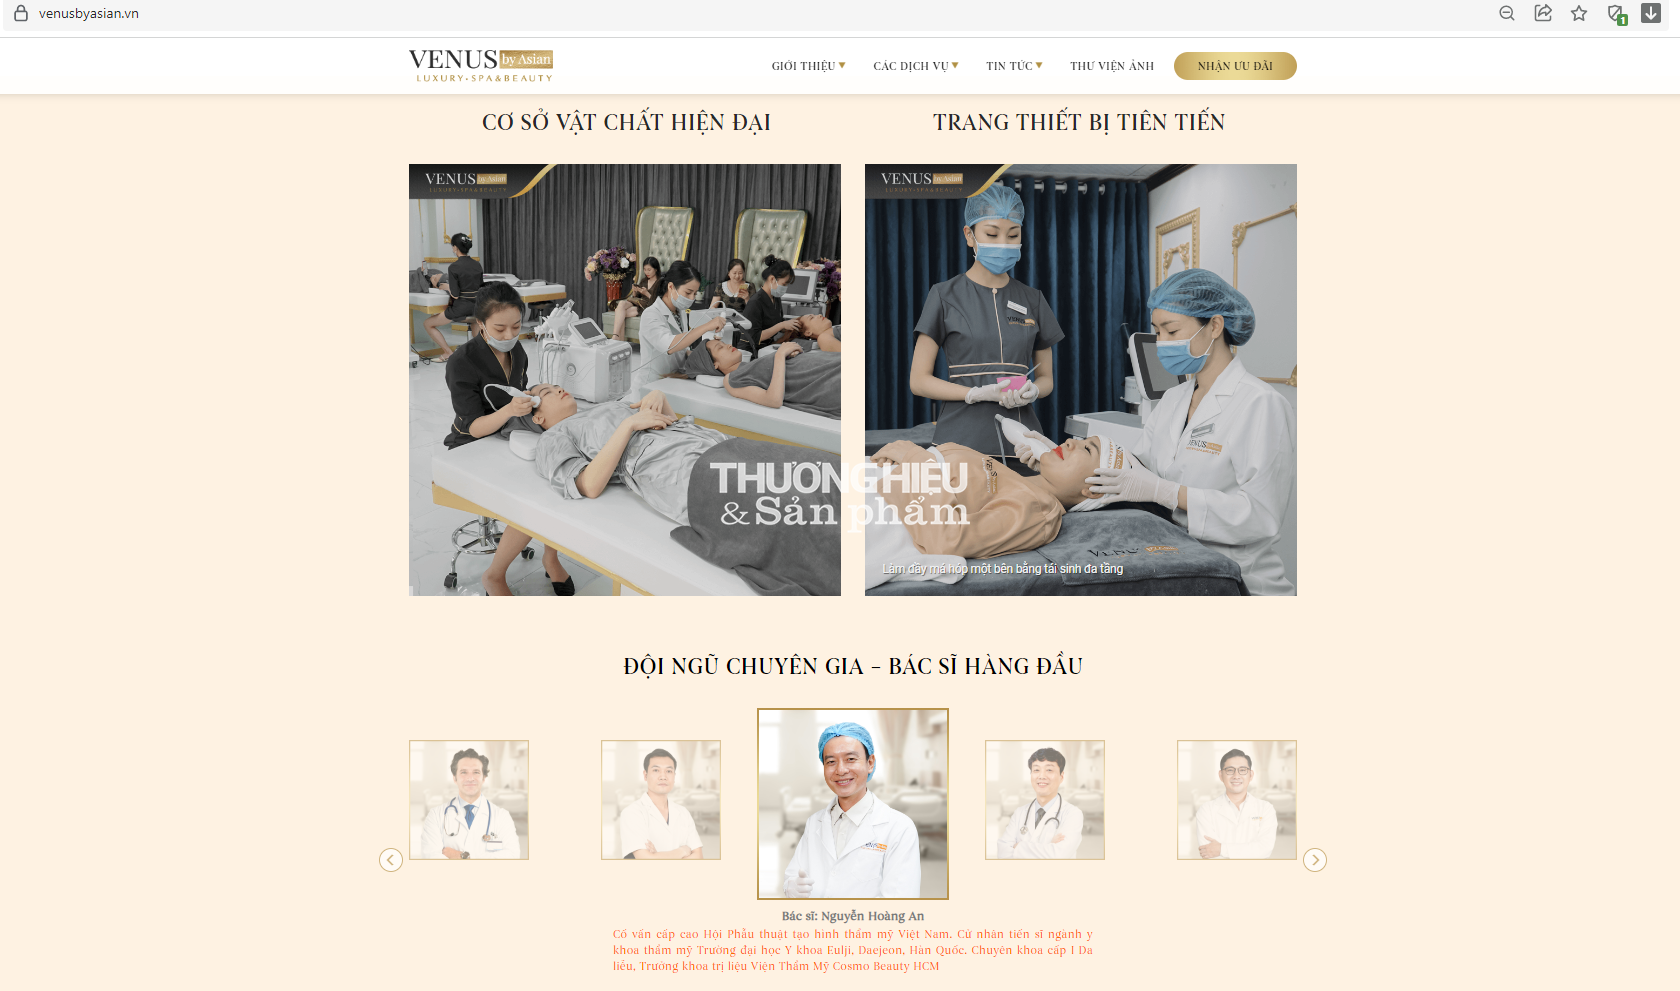 Thông tin quảng cáo về đội ngũ bác sĩ, chuyên gia đảm nhận thực hiện các dịch vụ phẫu thuật có xâm lấn tại Thẩm mỹ VENUS BY ASIAN trên website venusbyasian.vn